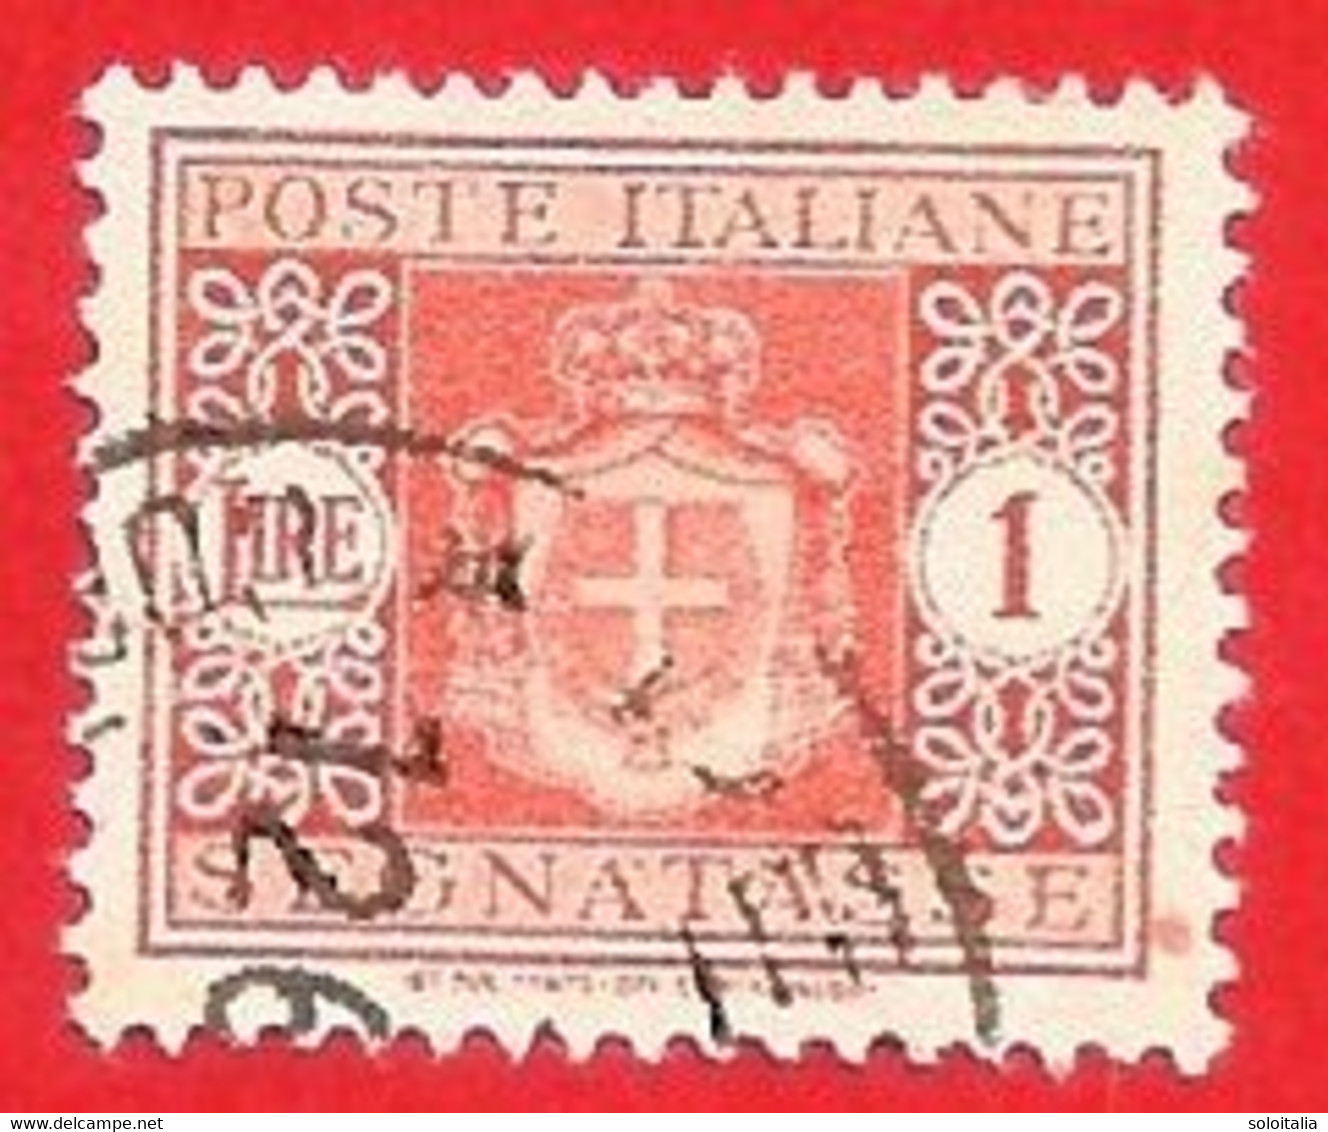 1945 (92) Segnatasse Stemma Senza Fasci Filigrana Ruota Lire 1 Usato - Leggi Il Messaggio Del Venditore - Postage Due